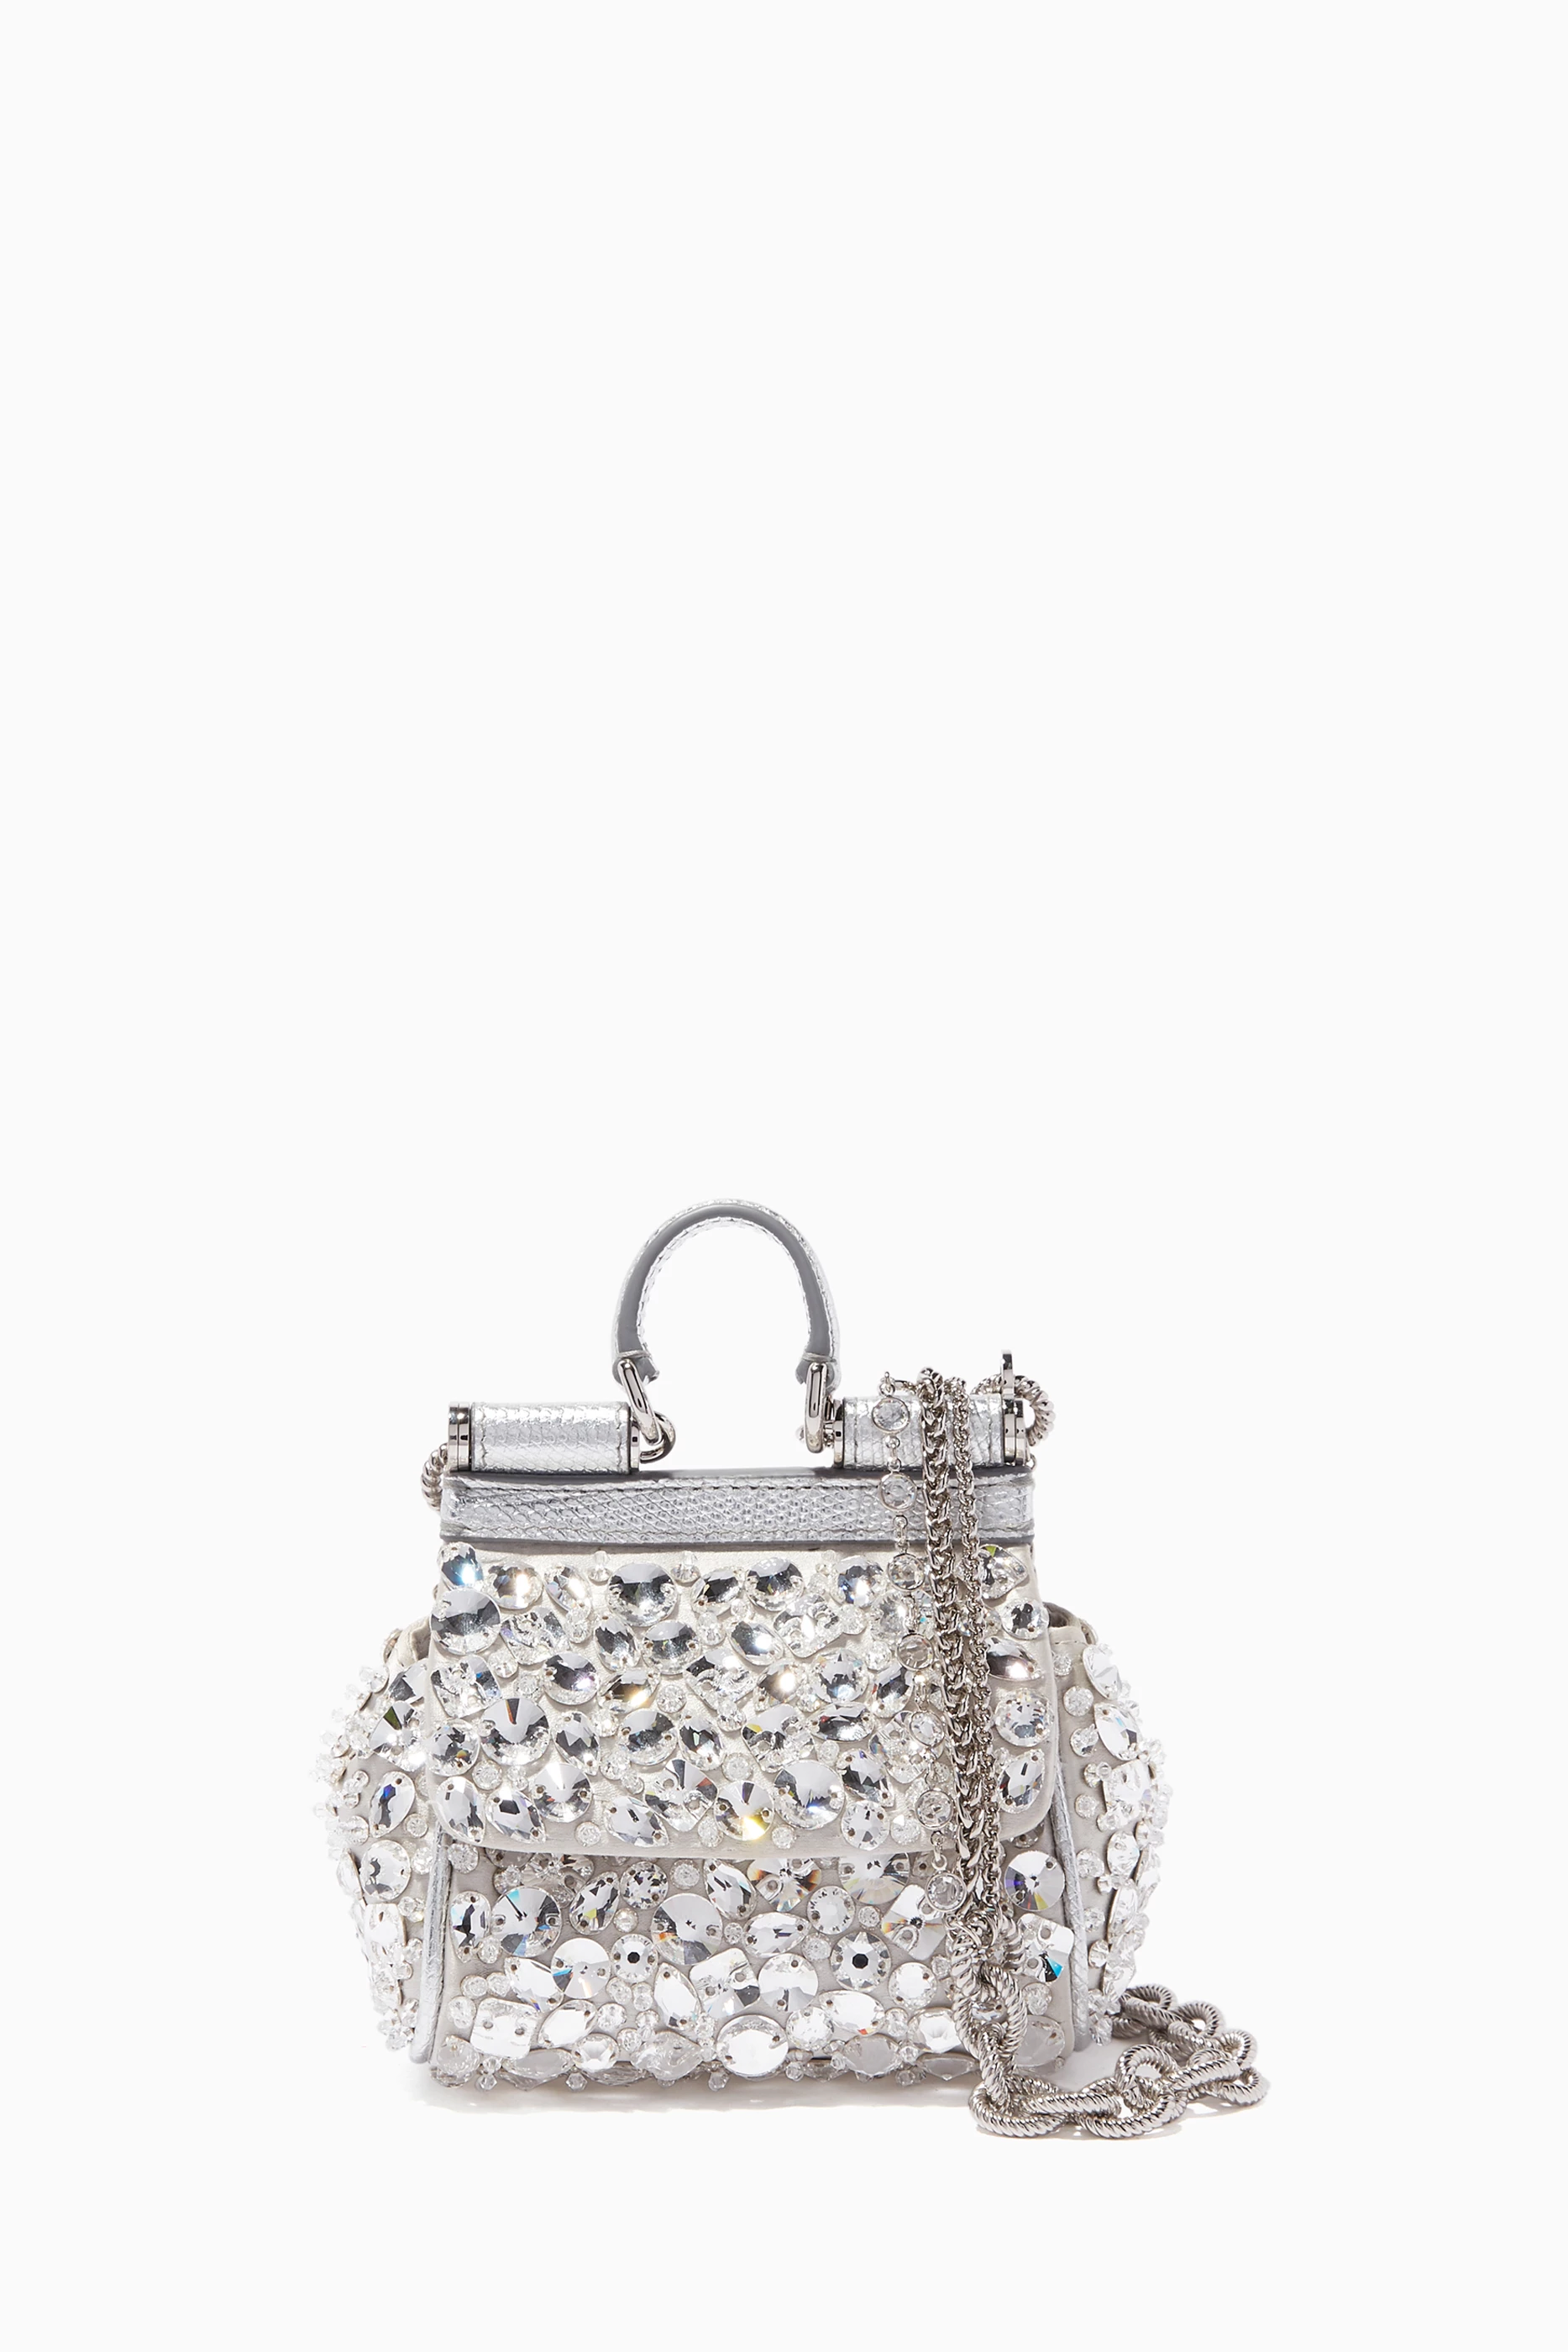 SOLD DOLCE GABBANA Crystal Embellished Sicily bag